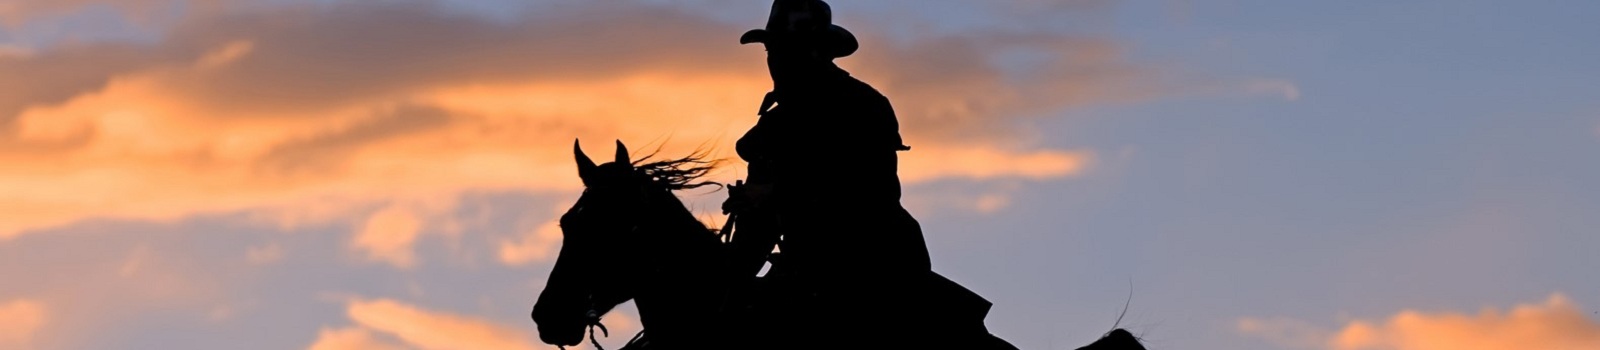 TANQUE-VERDE-RANCH -USA Ranch Cowboy riding across Montana ridge at dawn  113696368